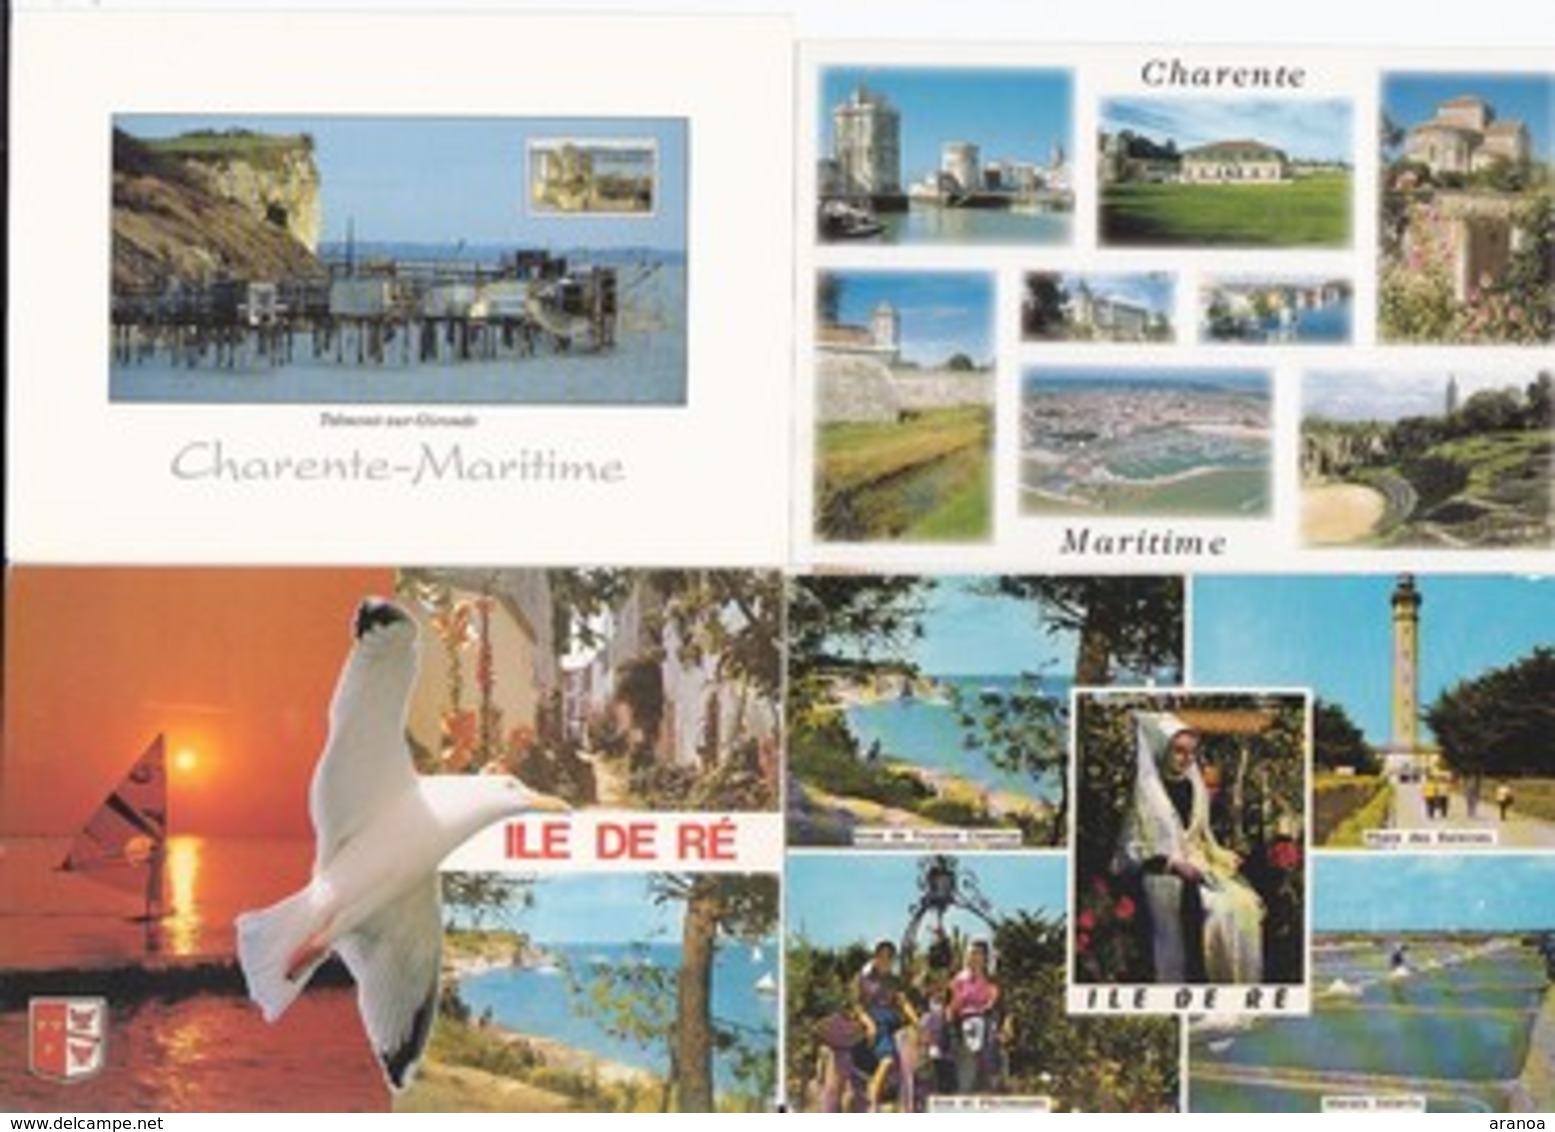 France -- Départements différents (04) -- Multivues -- Lot de 84 cartes